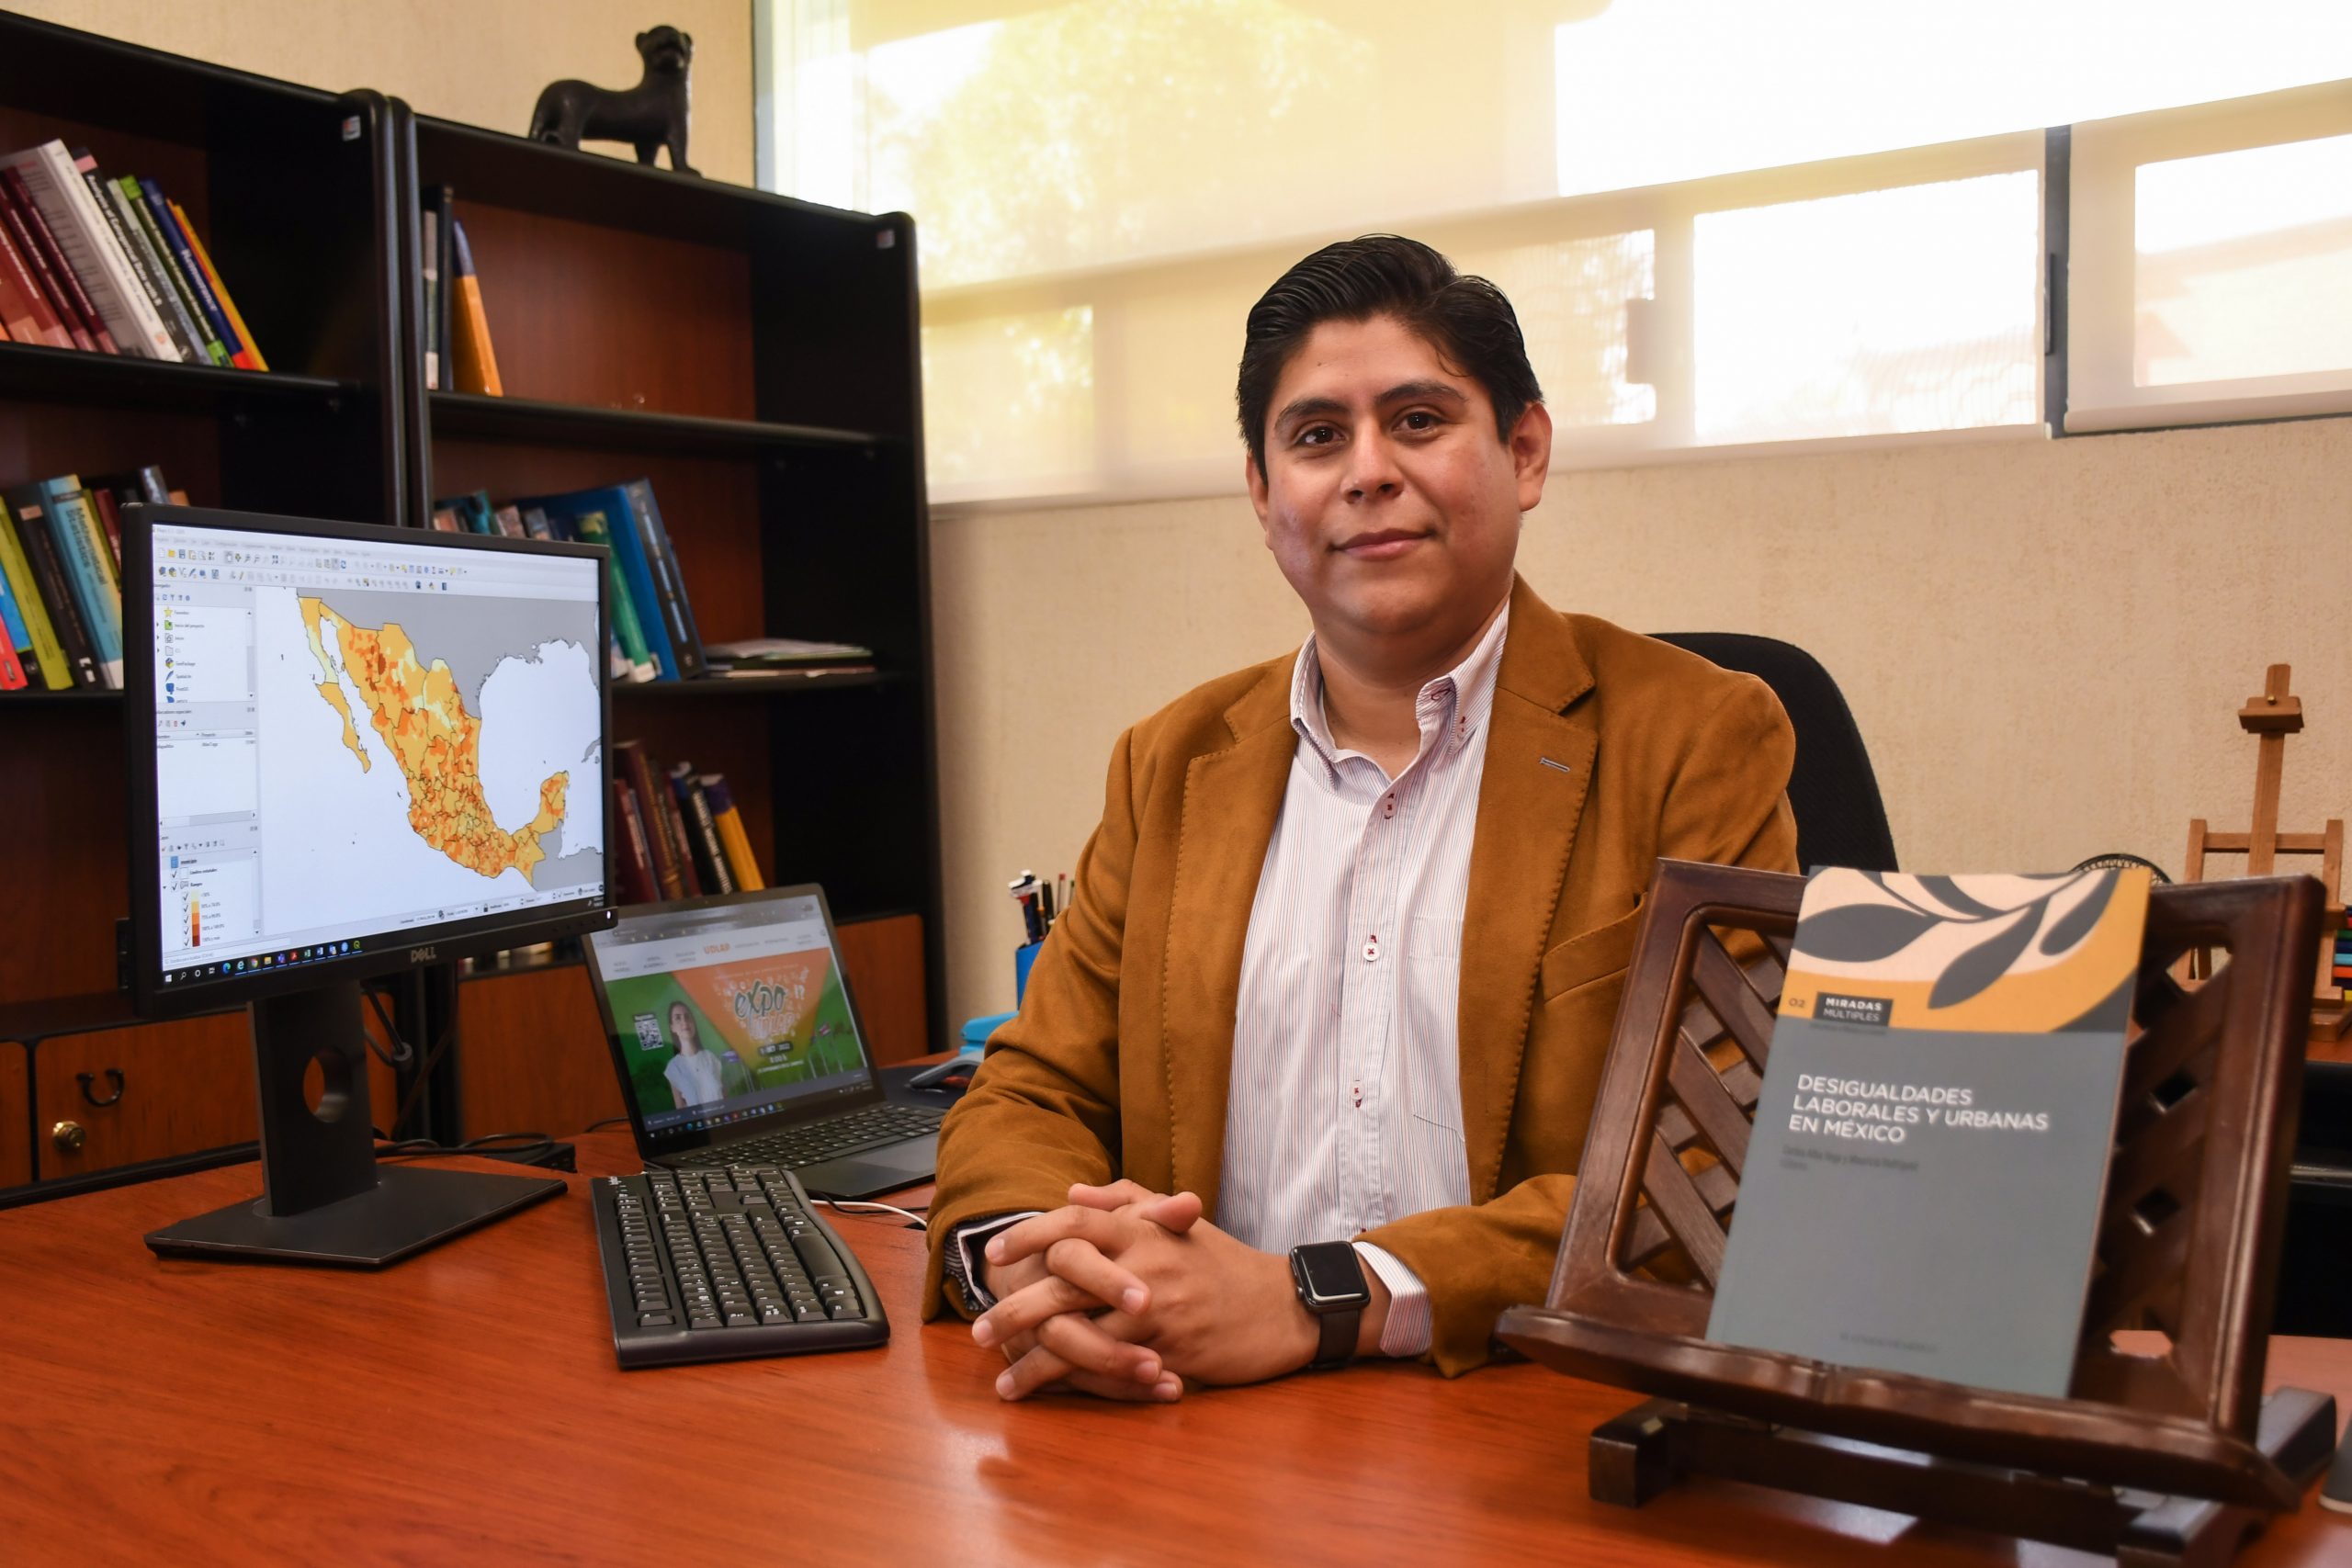 Académico UDLAP presenta un panorama de los empleos en México